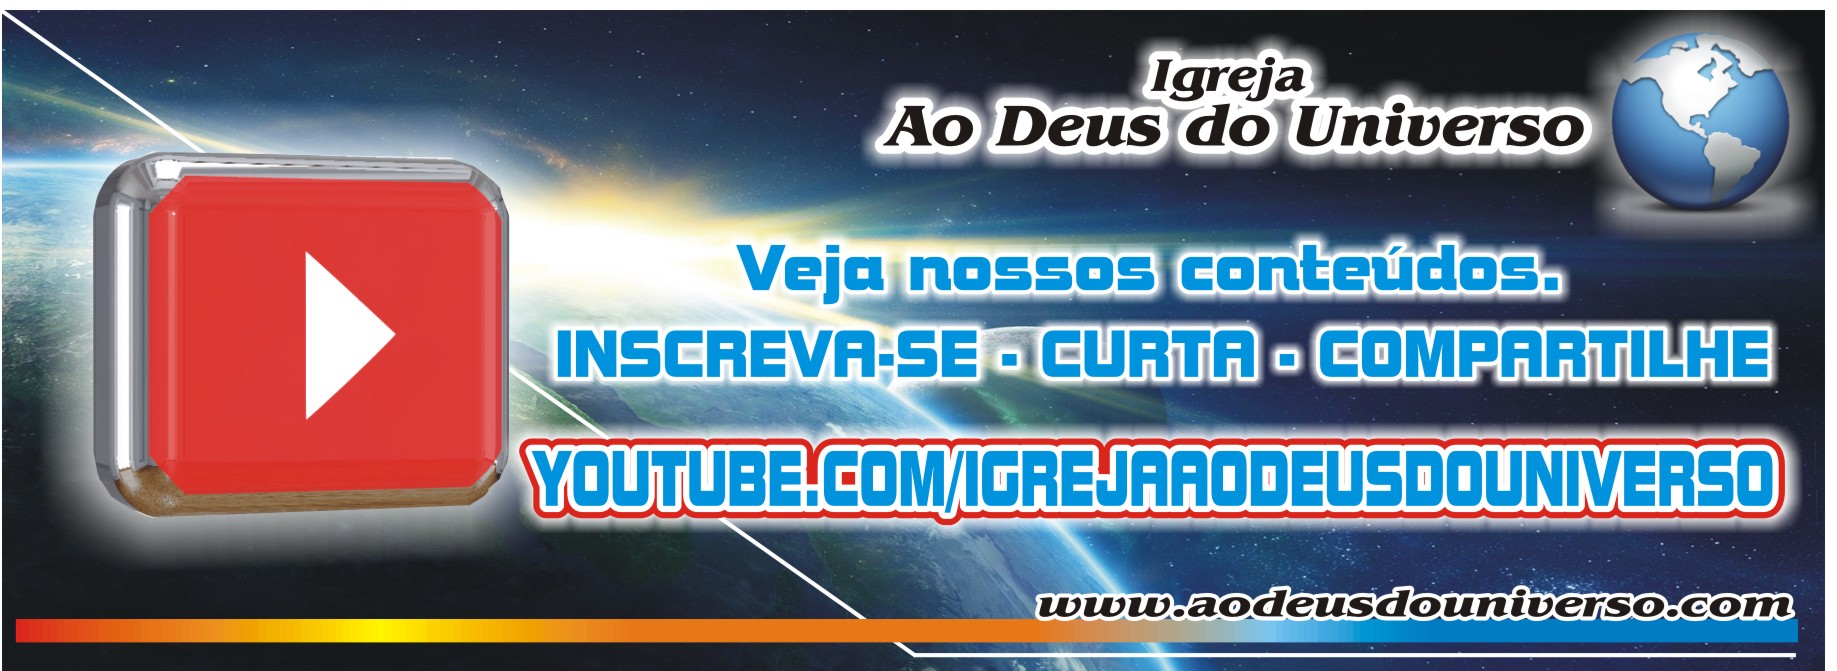 Canal YouTube da Igreja Ao Deus do Universo